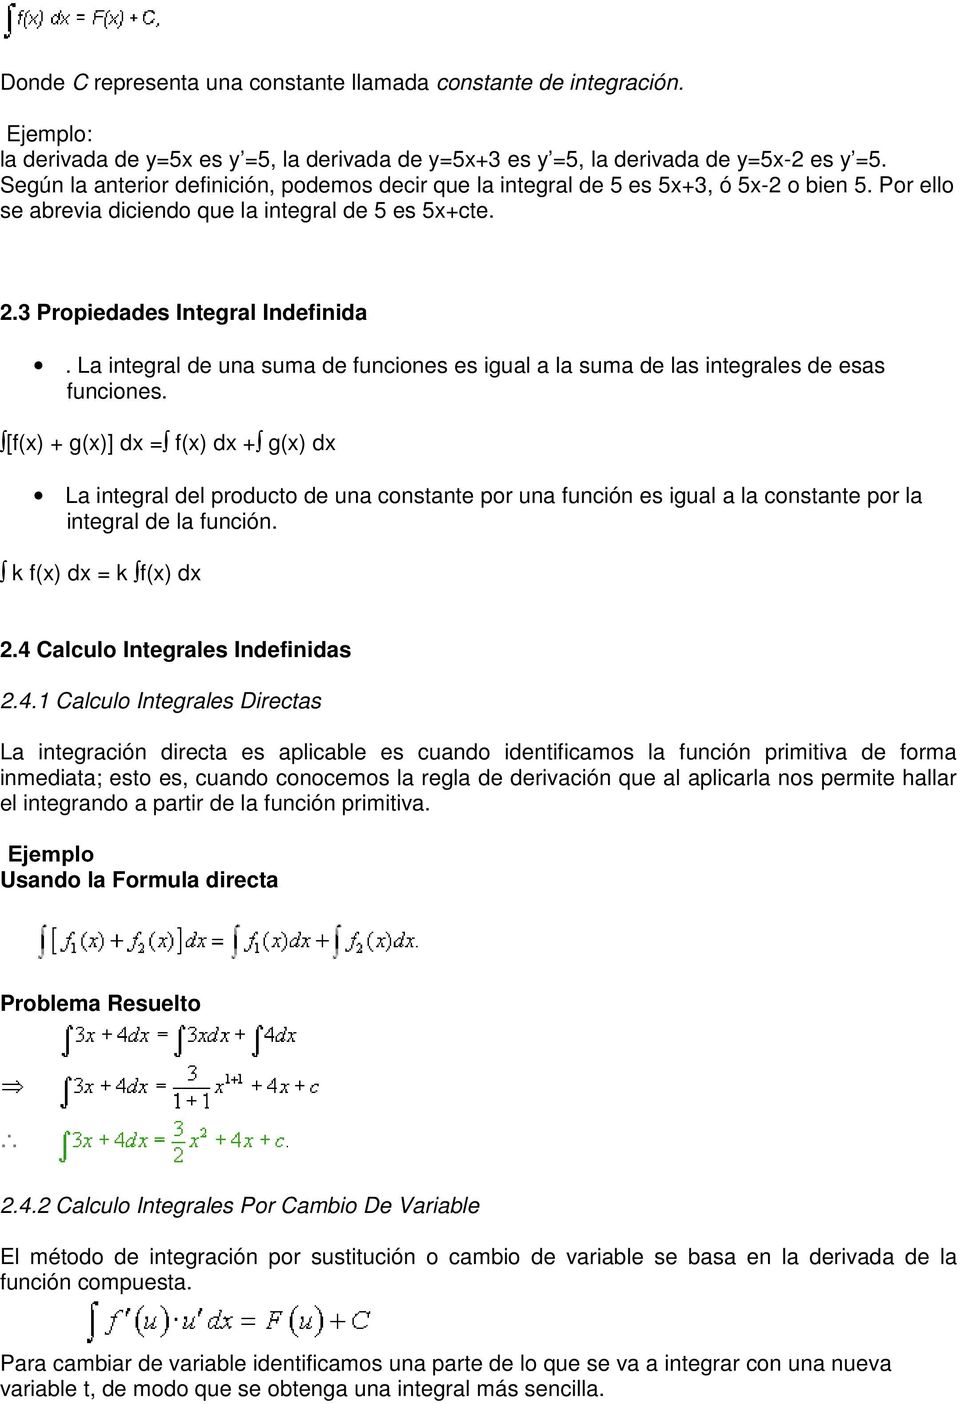 La integral de una suma de funciones es igual a la suma de las integrales de esas funciones.